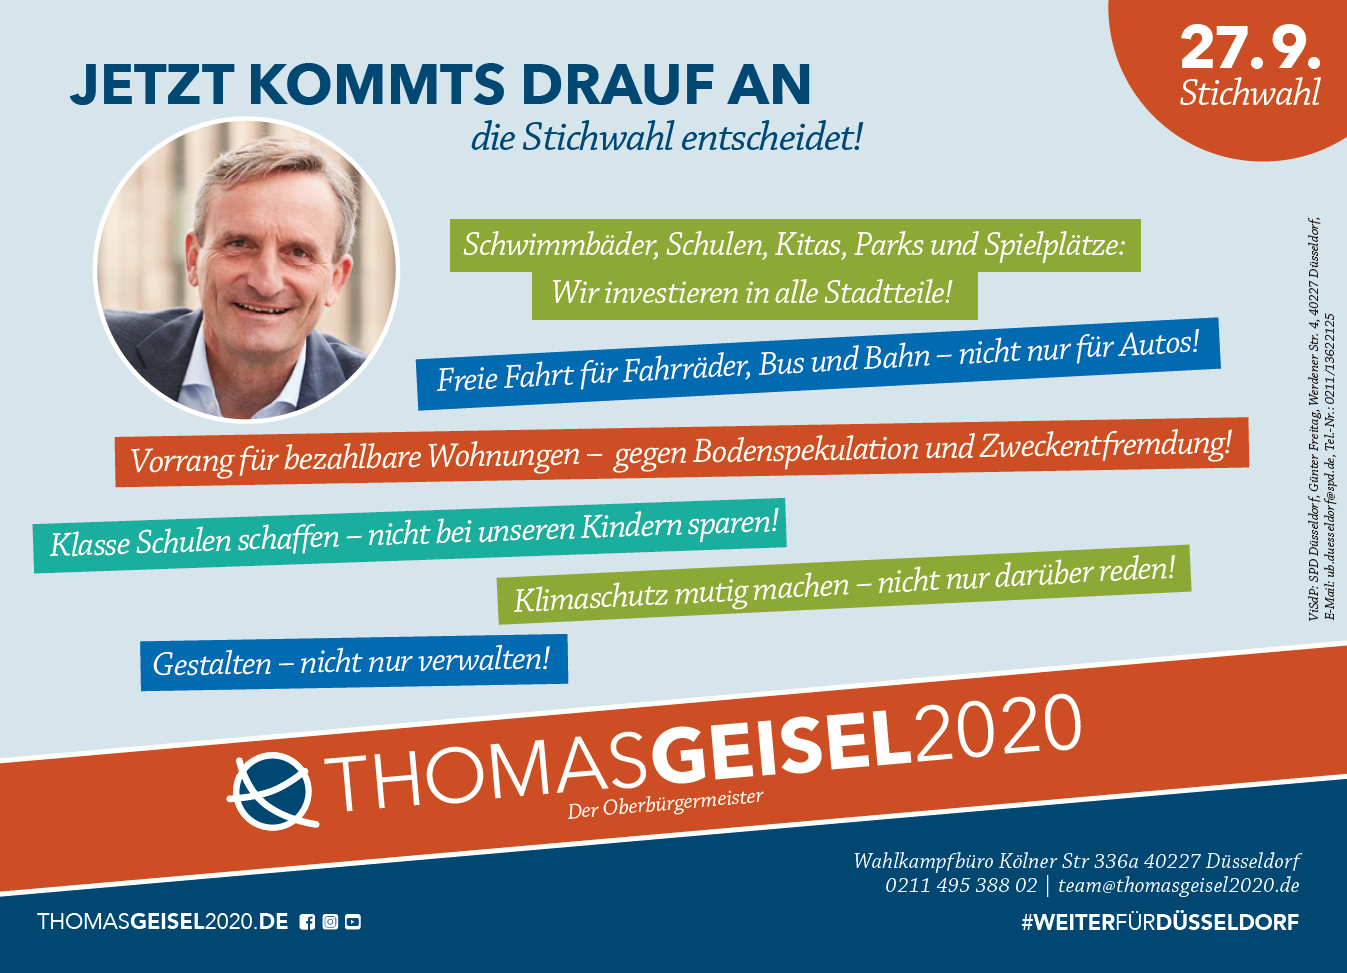 Thomas Geisel